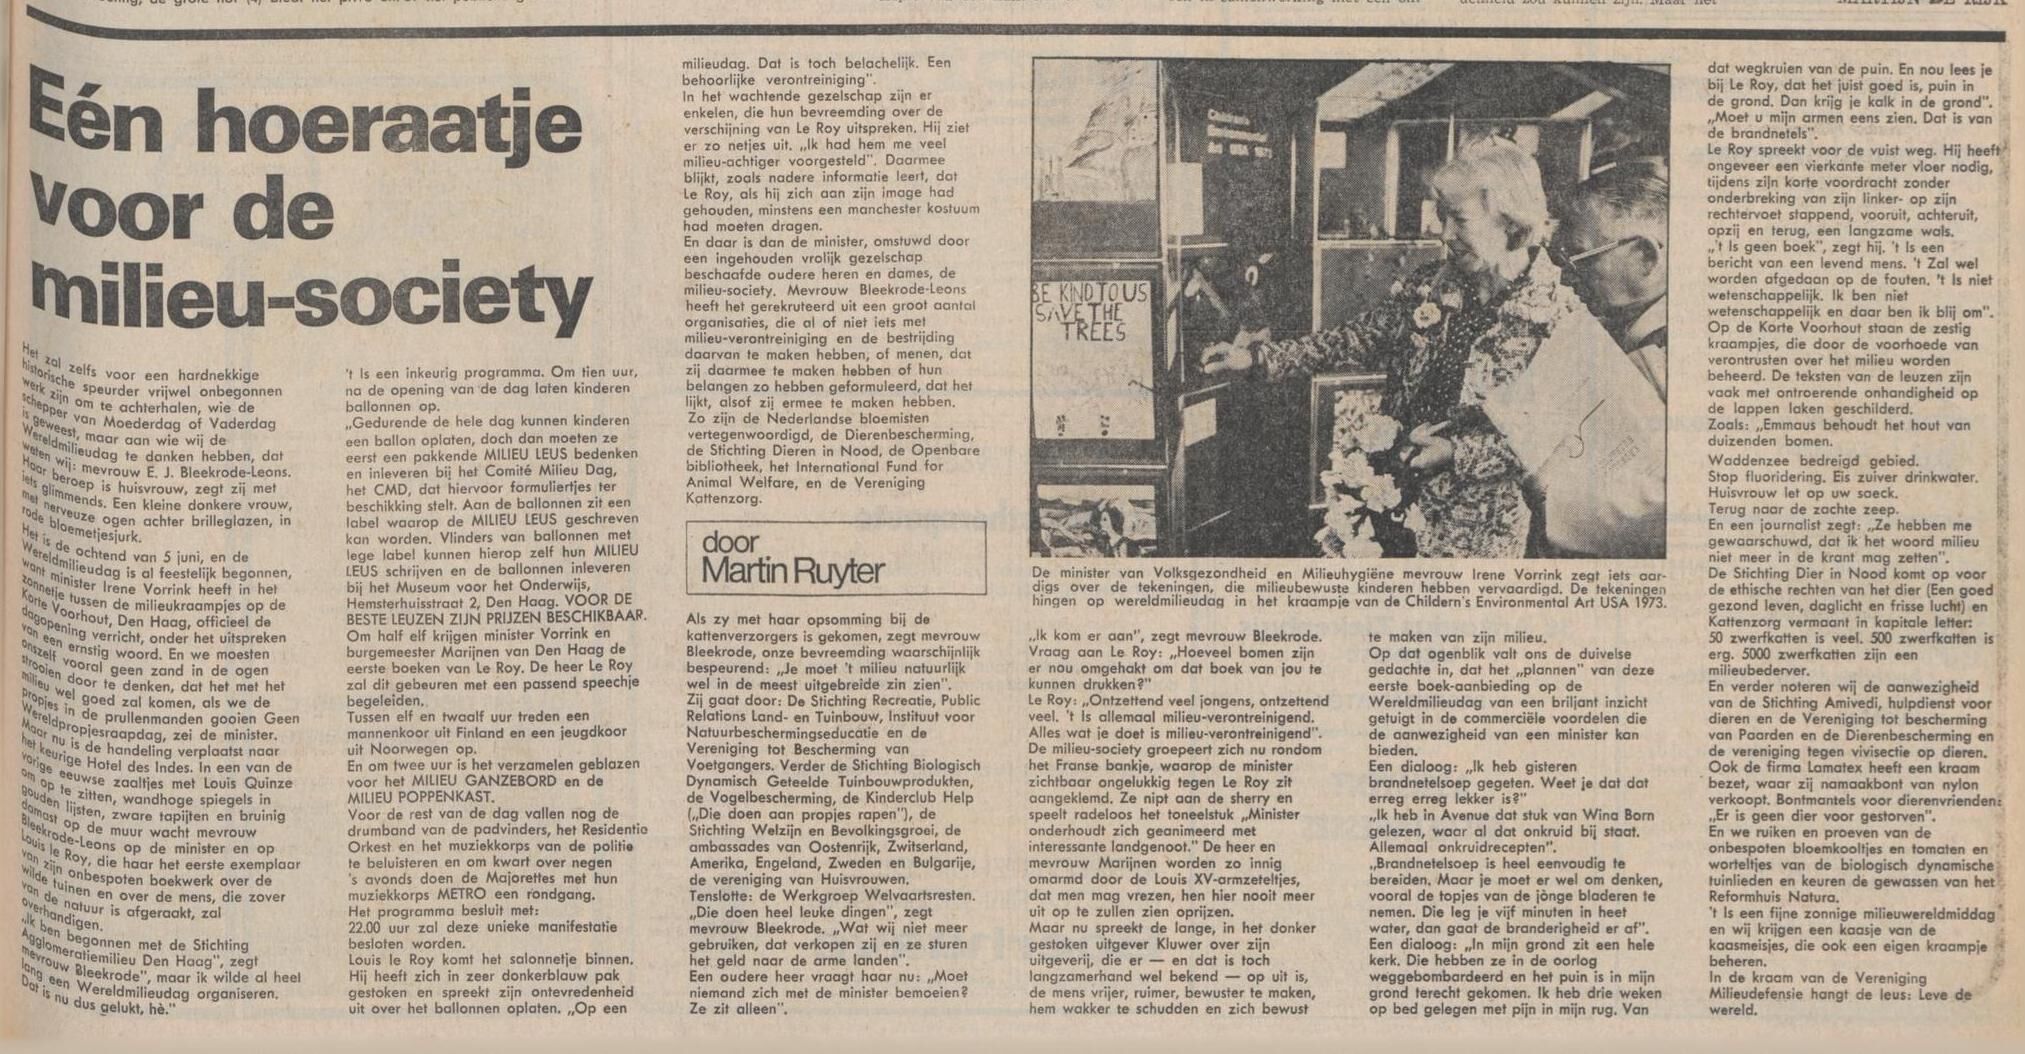 19730609_Volkskrant_Eén_hoeraatje_voor_de_milieu-society.jpg